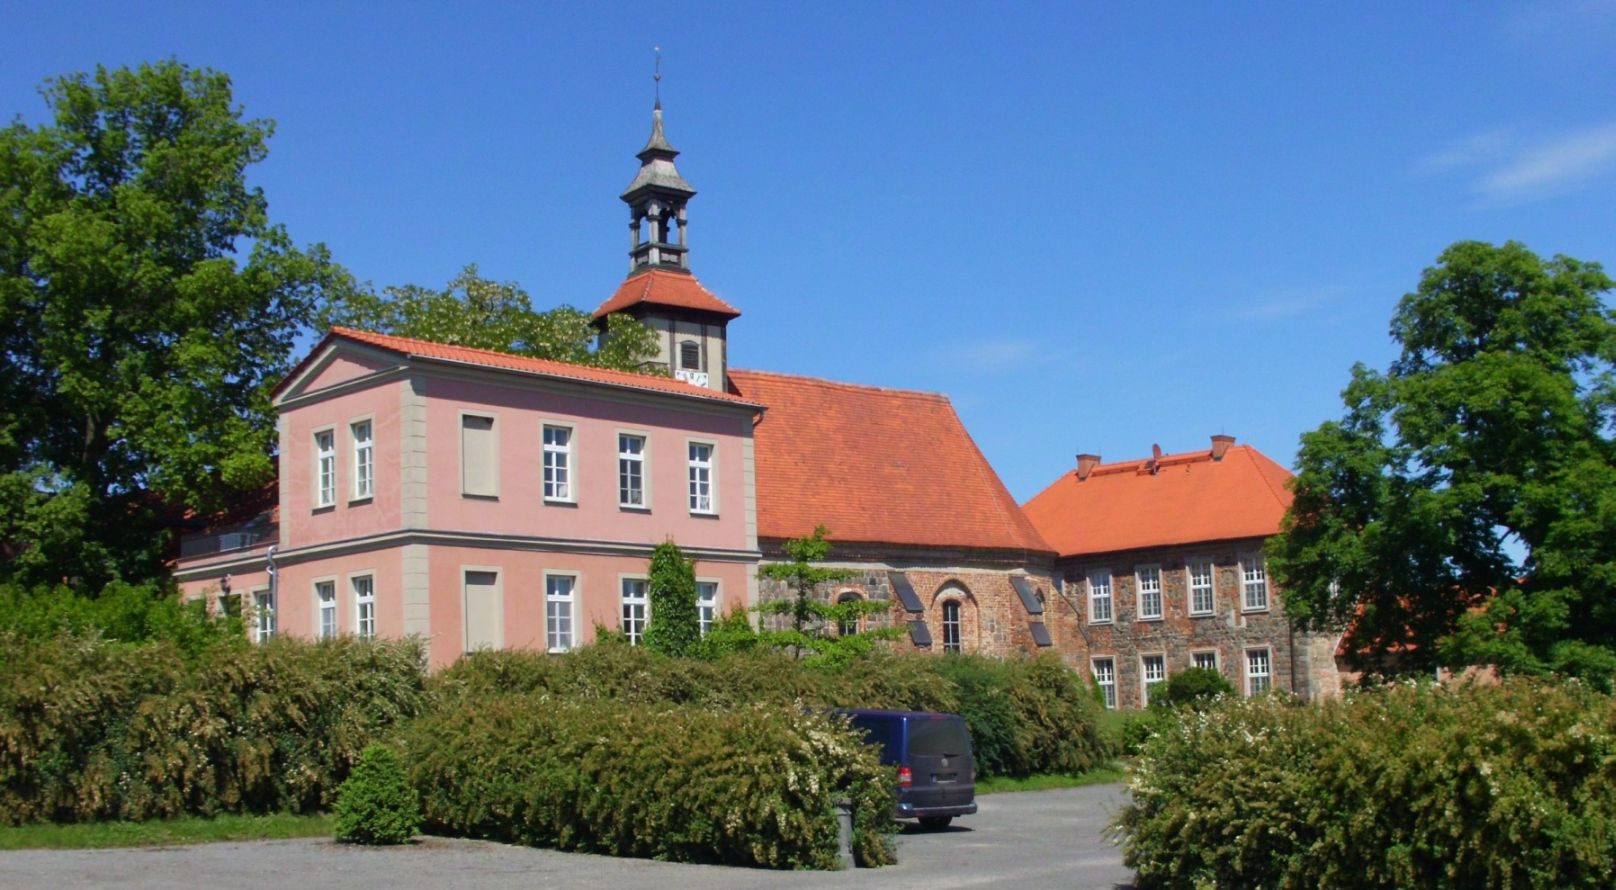 Komturei Lietzen (Gutsverwaltung, Komtureikirche, Herrenhaus)